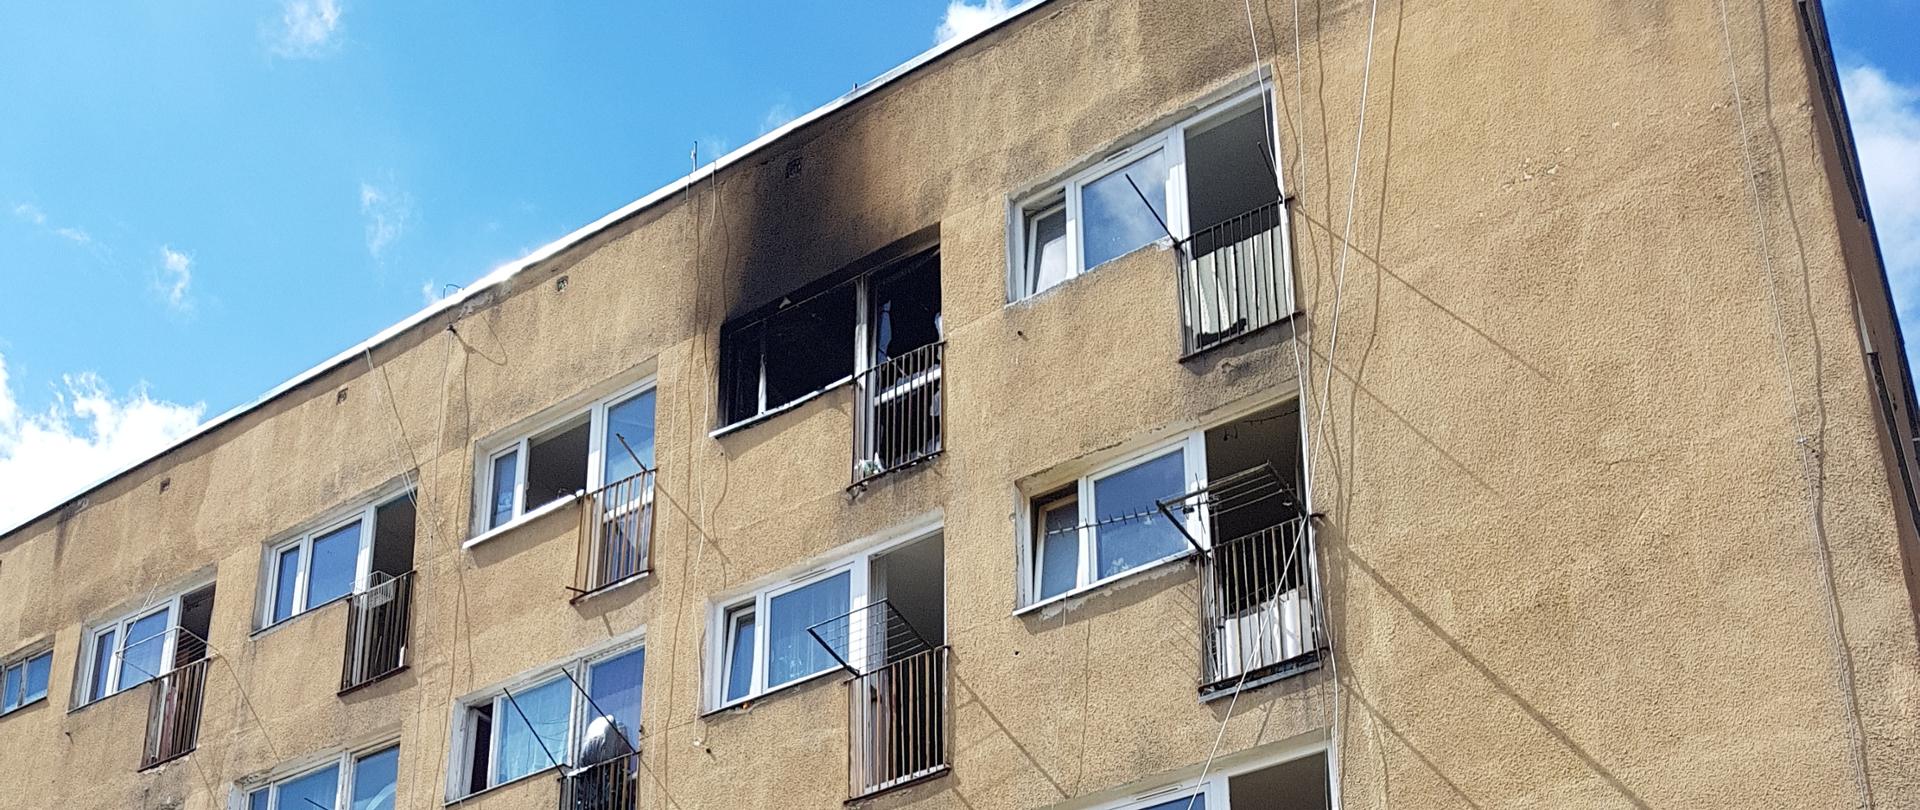 Pożar mieszkania ul. Lechicka 29 w Koszalinie. Widok budynku wielorodzinnego z podwórka.